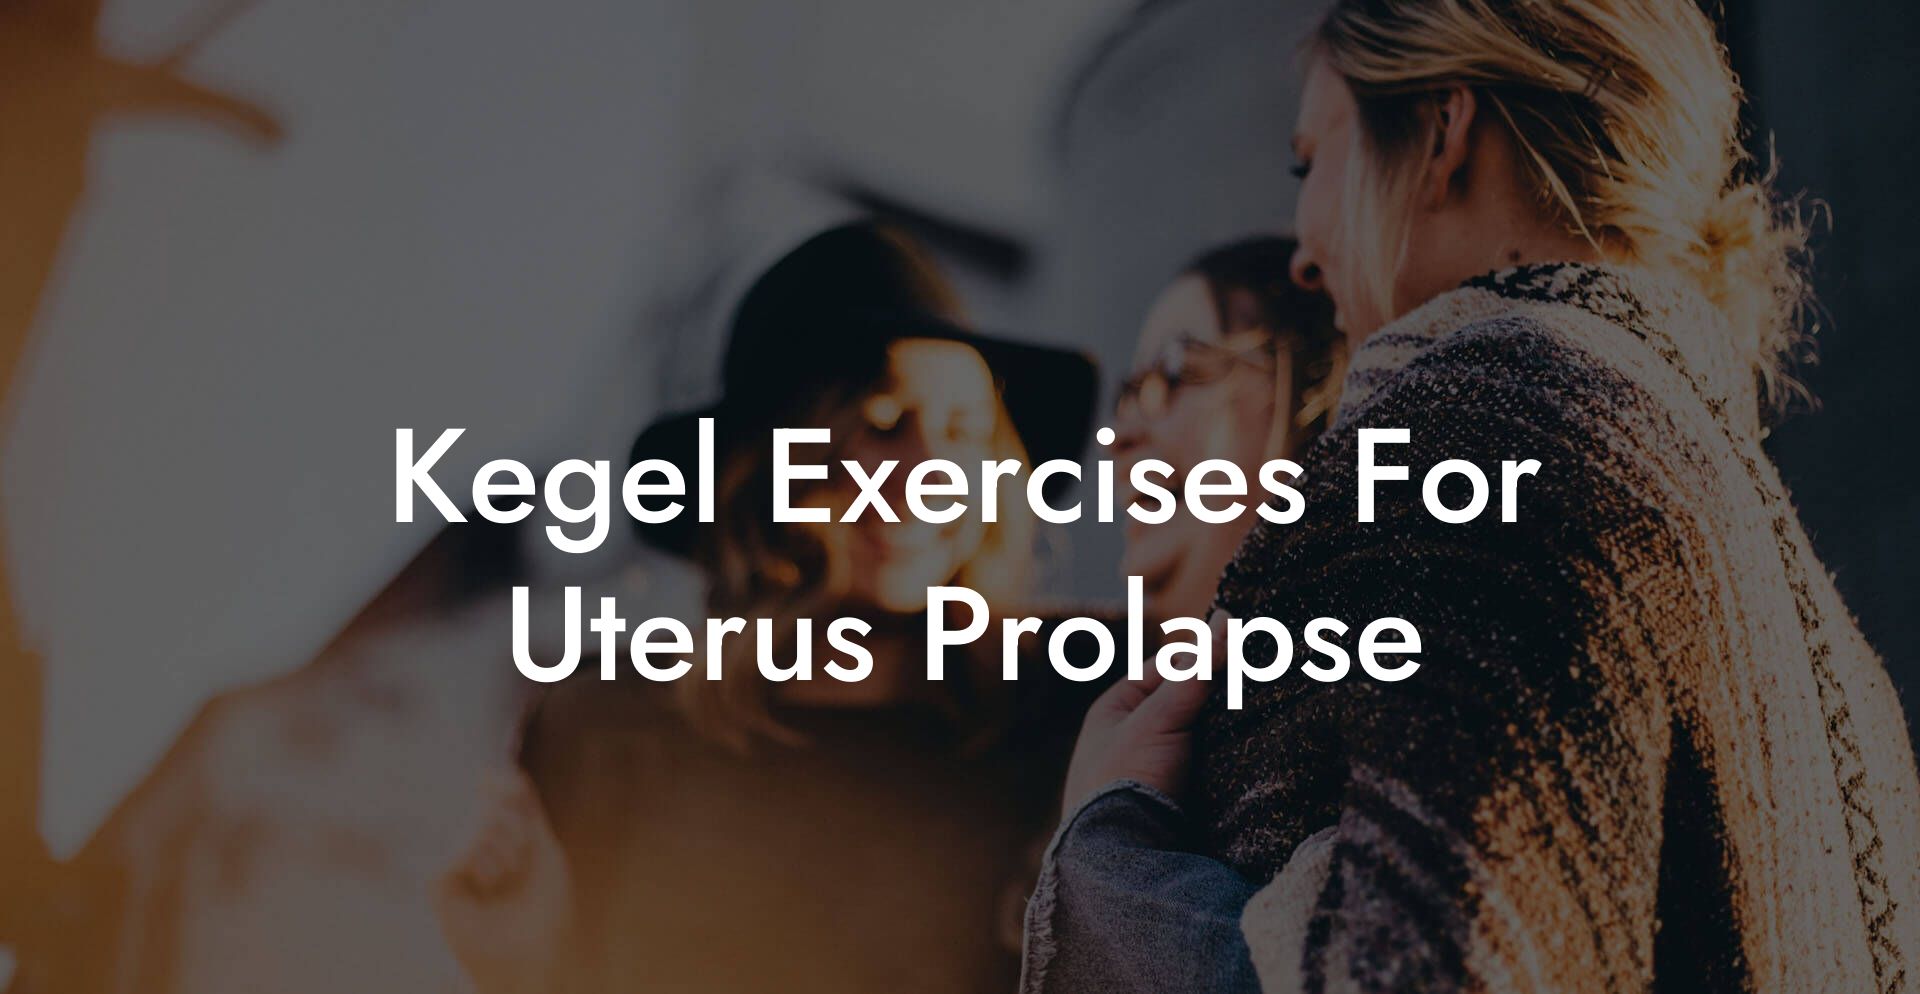 Kegel Exercises For Uterus Prolapse